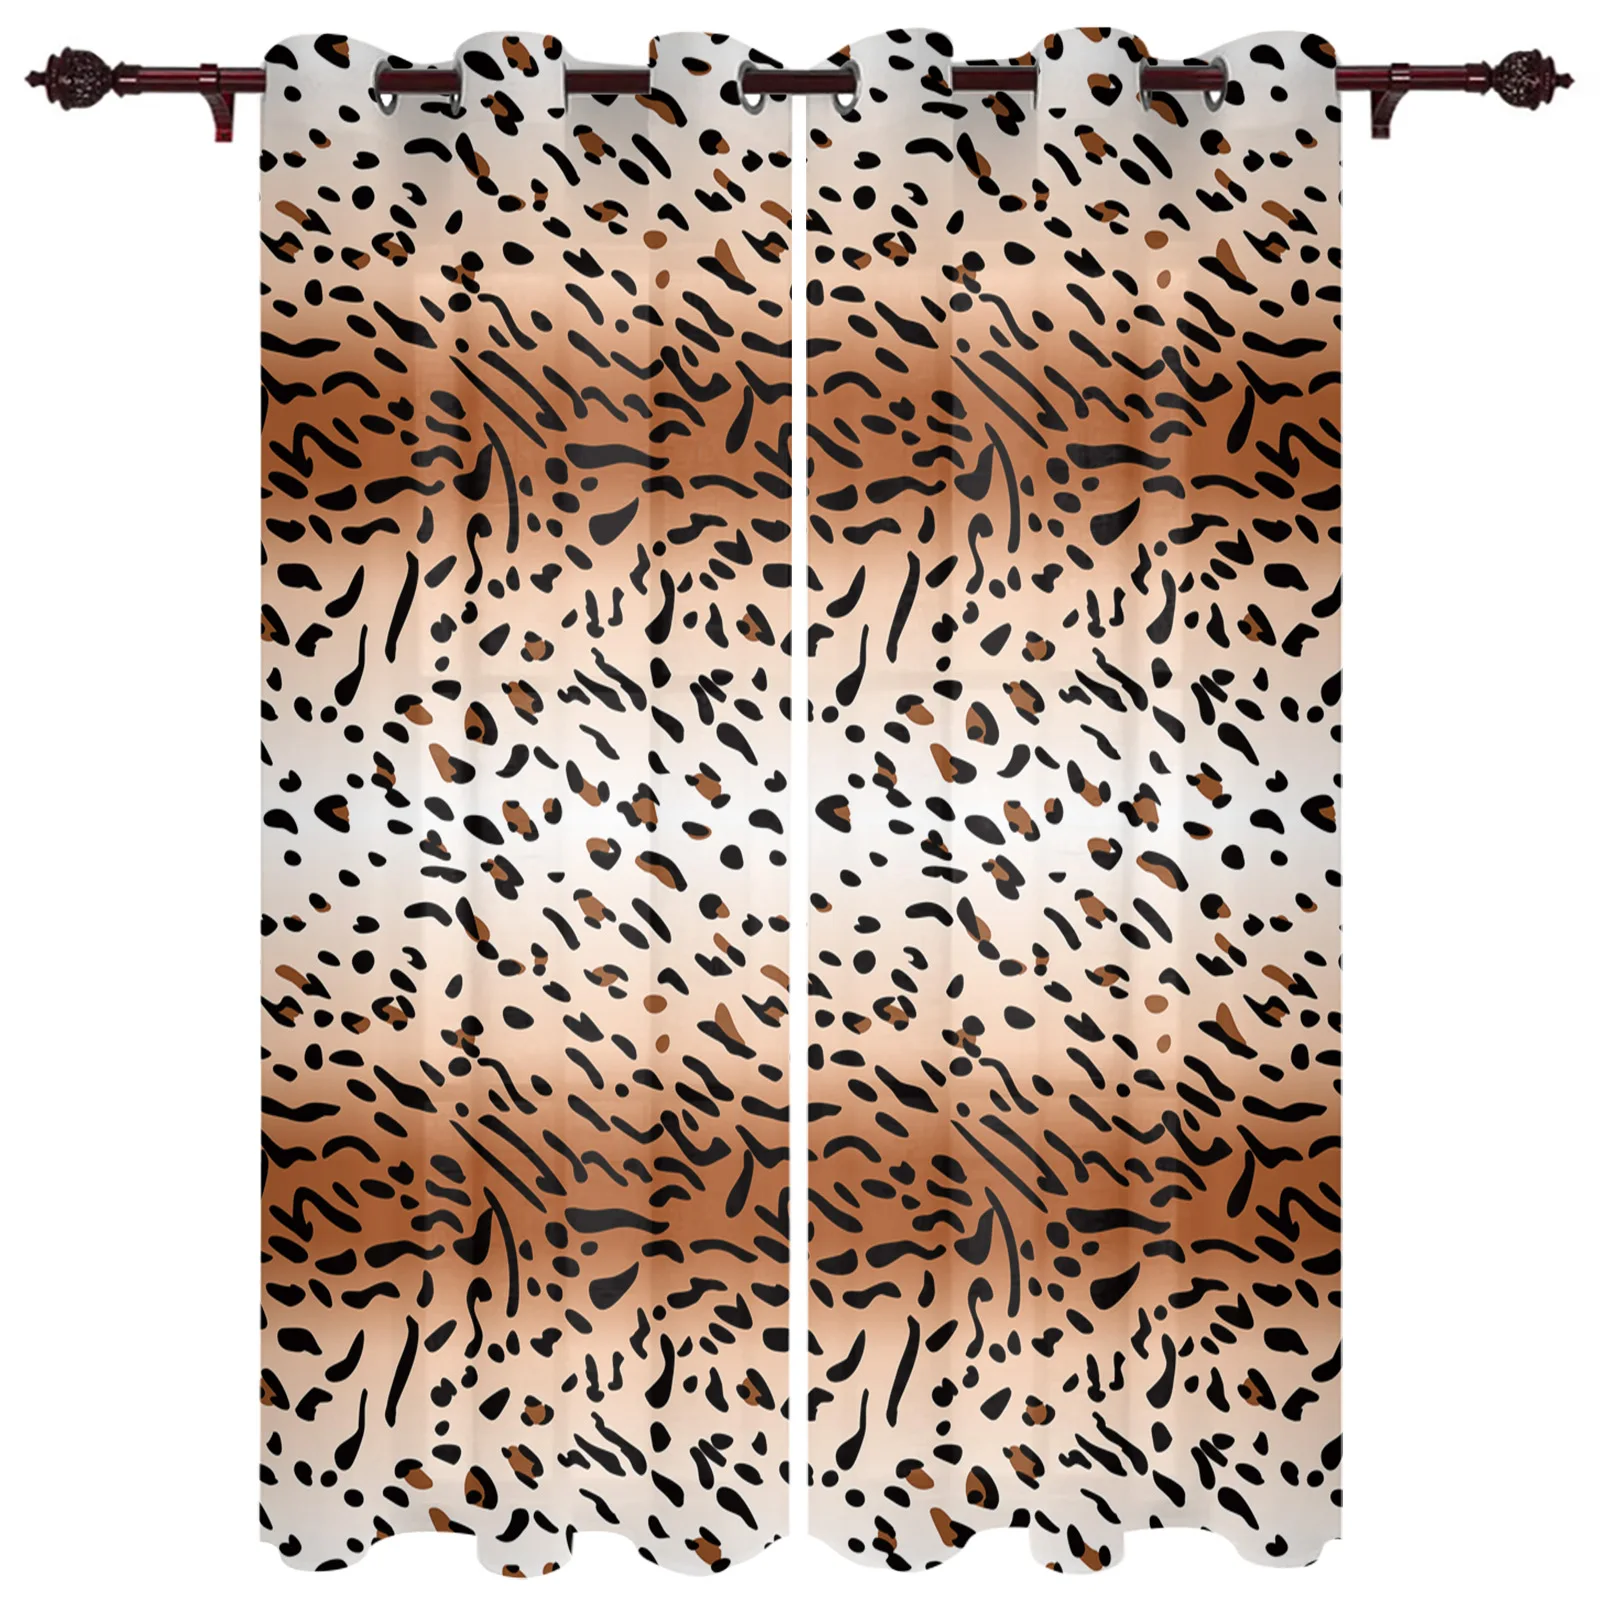 

Wild леопардовым рисунком Большой шторы в простом стиле для гостиной обеденный современный простые шторы готовой шторы в простом стиле для О...